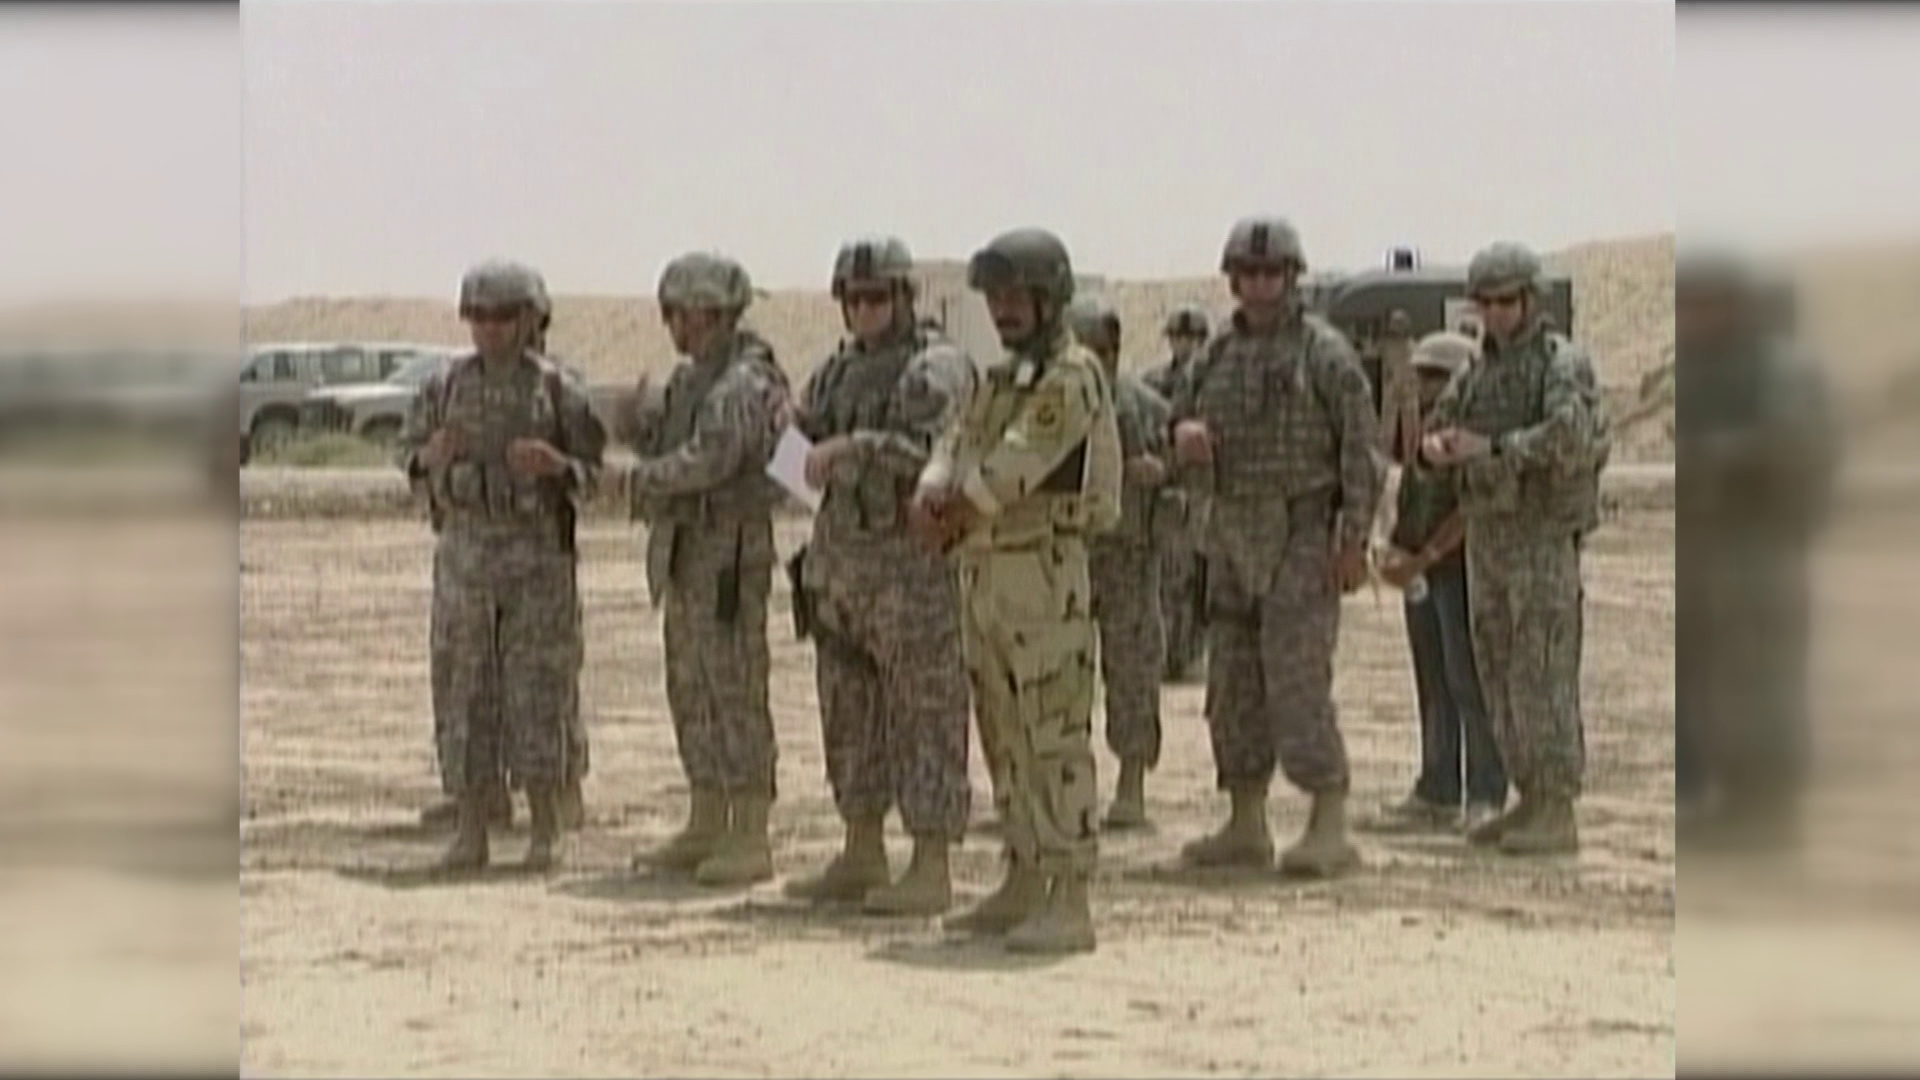 Egy gyászmenet tagjaira támadtak Irakban